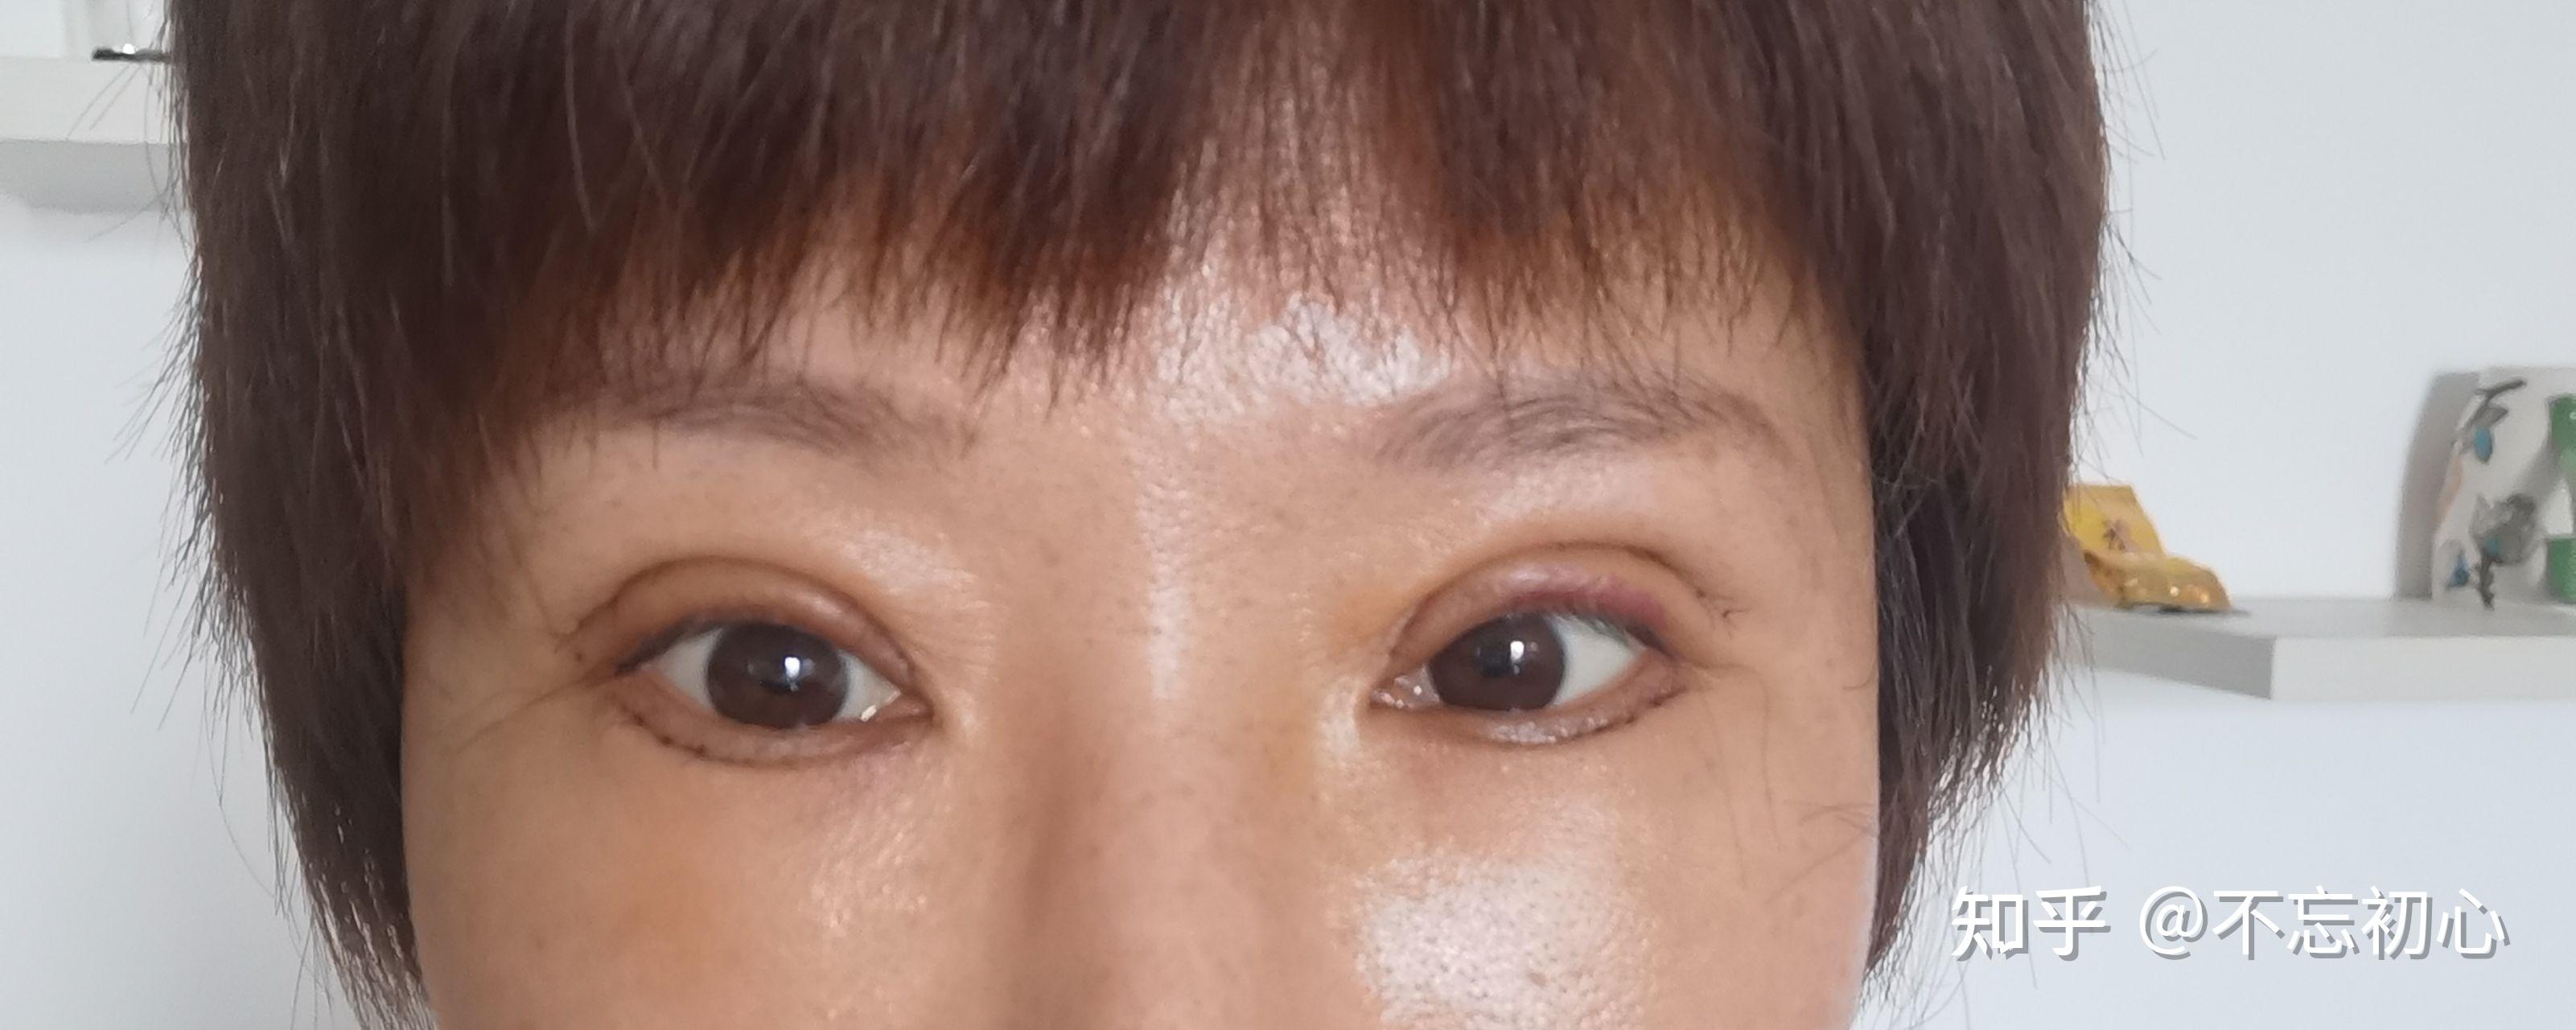 张冰洁双眼皮修复案例丨双眼皮窄变宽修复+内眼角疤痕修复+开外眼角综述 - 哔哩哔哩